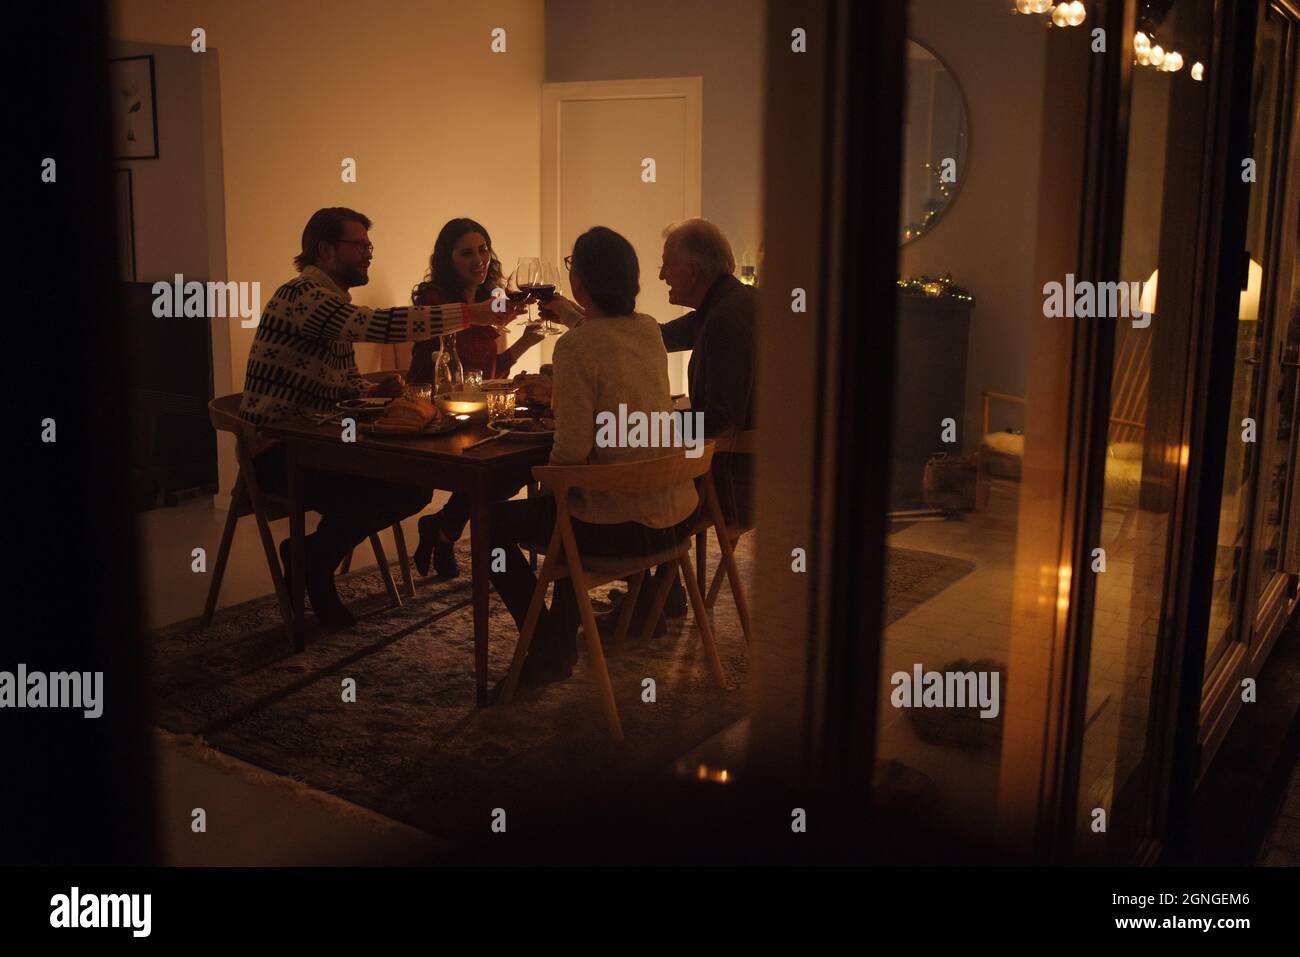 Degustación familiar de vino en la mesa de la cena en la víspera de Navidad. Familia teniendo una cena de Nochebuena juntos en la acogedora casa escandinava. Foto de stock